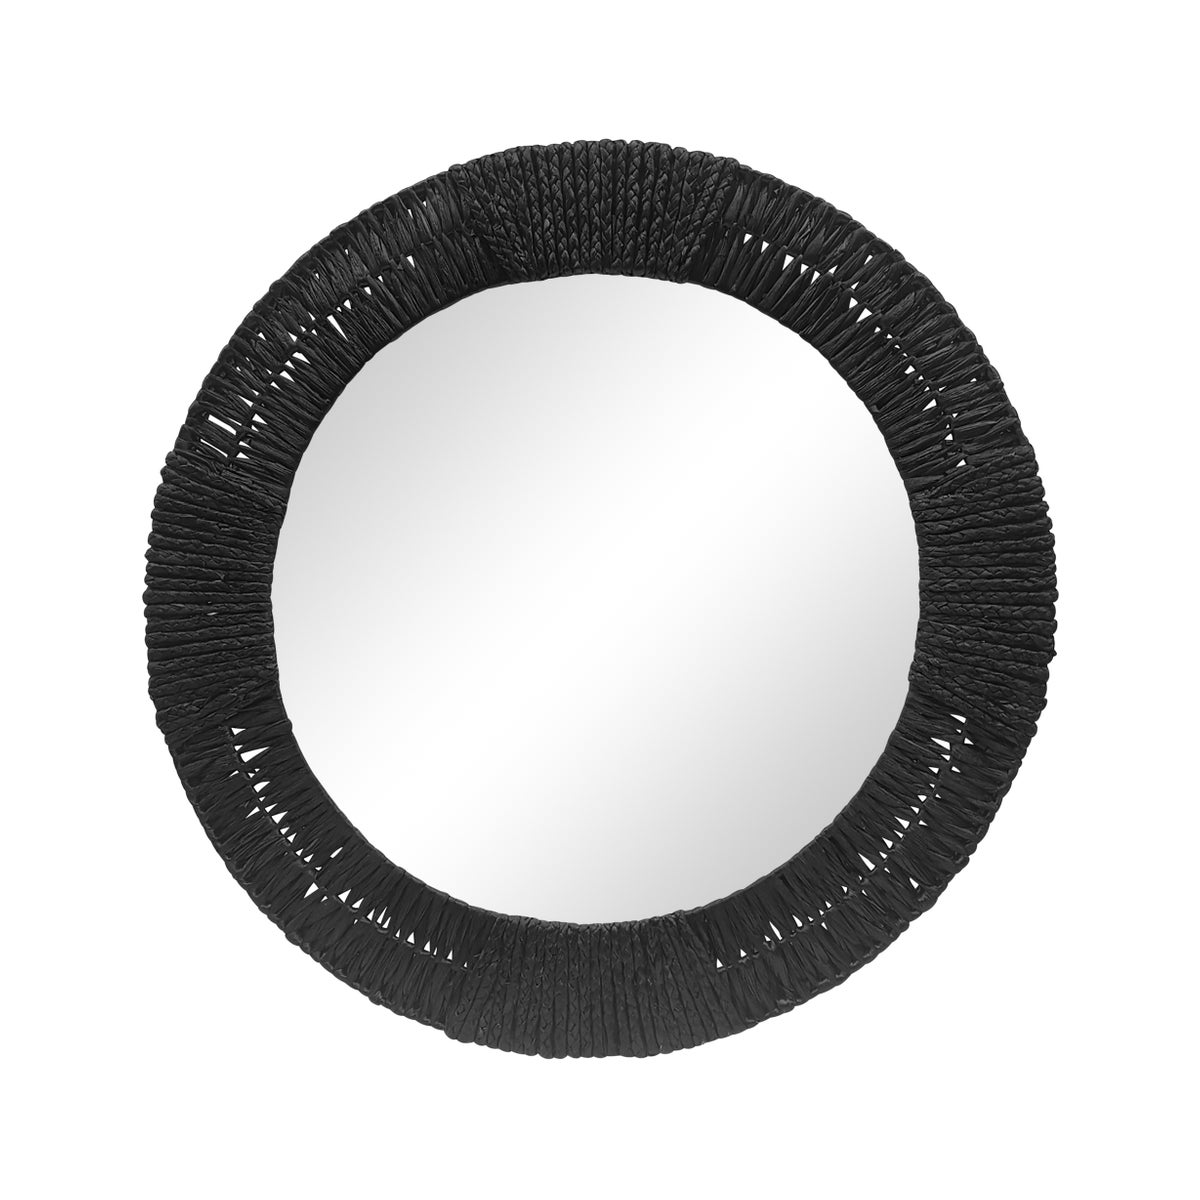 Folha Round Mirror in Black